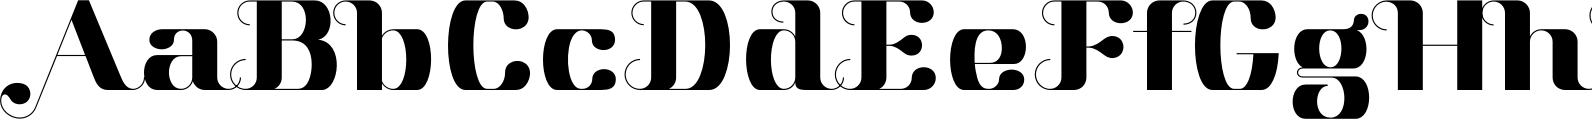 Aston Font OpenType